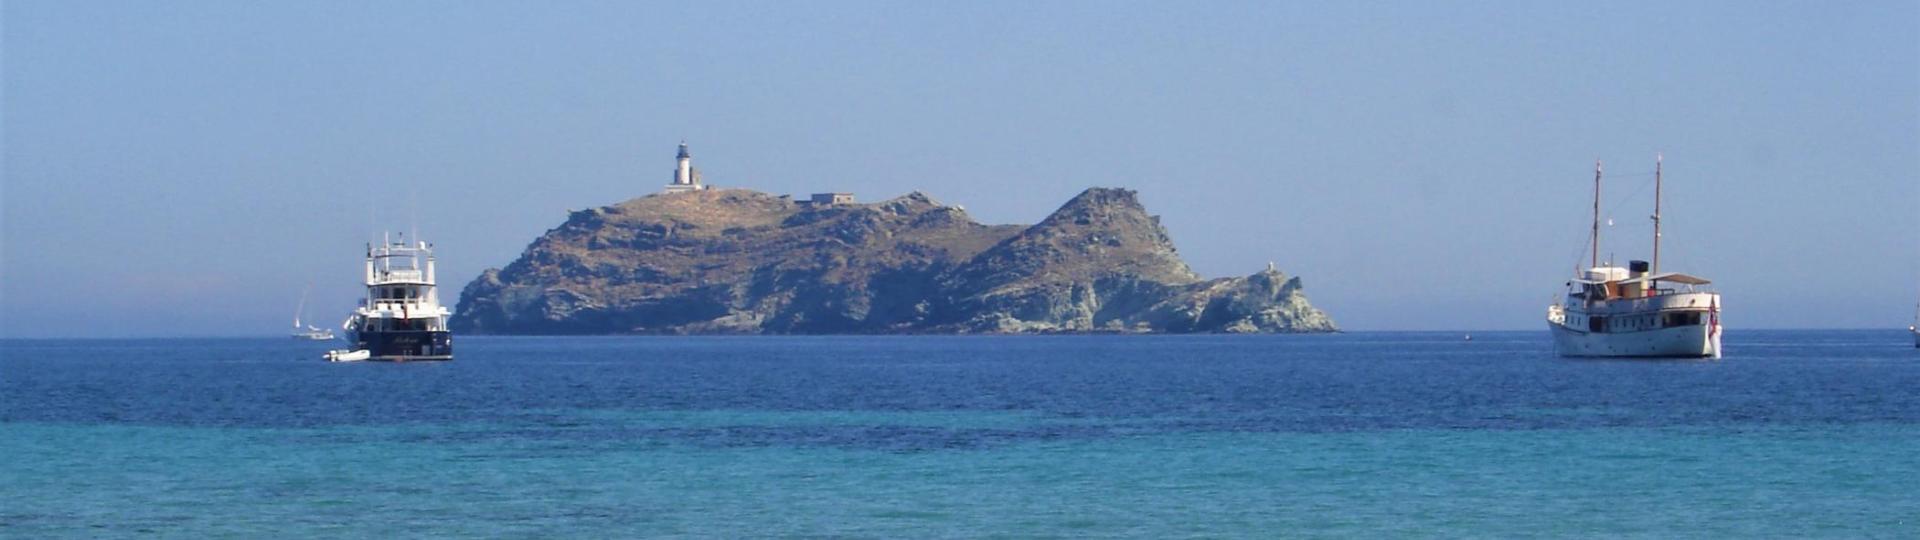 L'îlot de la Giraglia